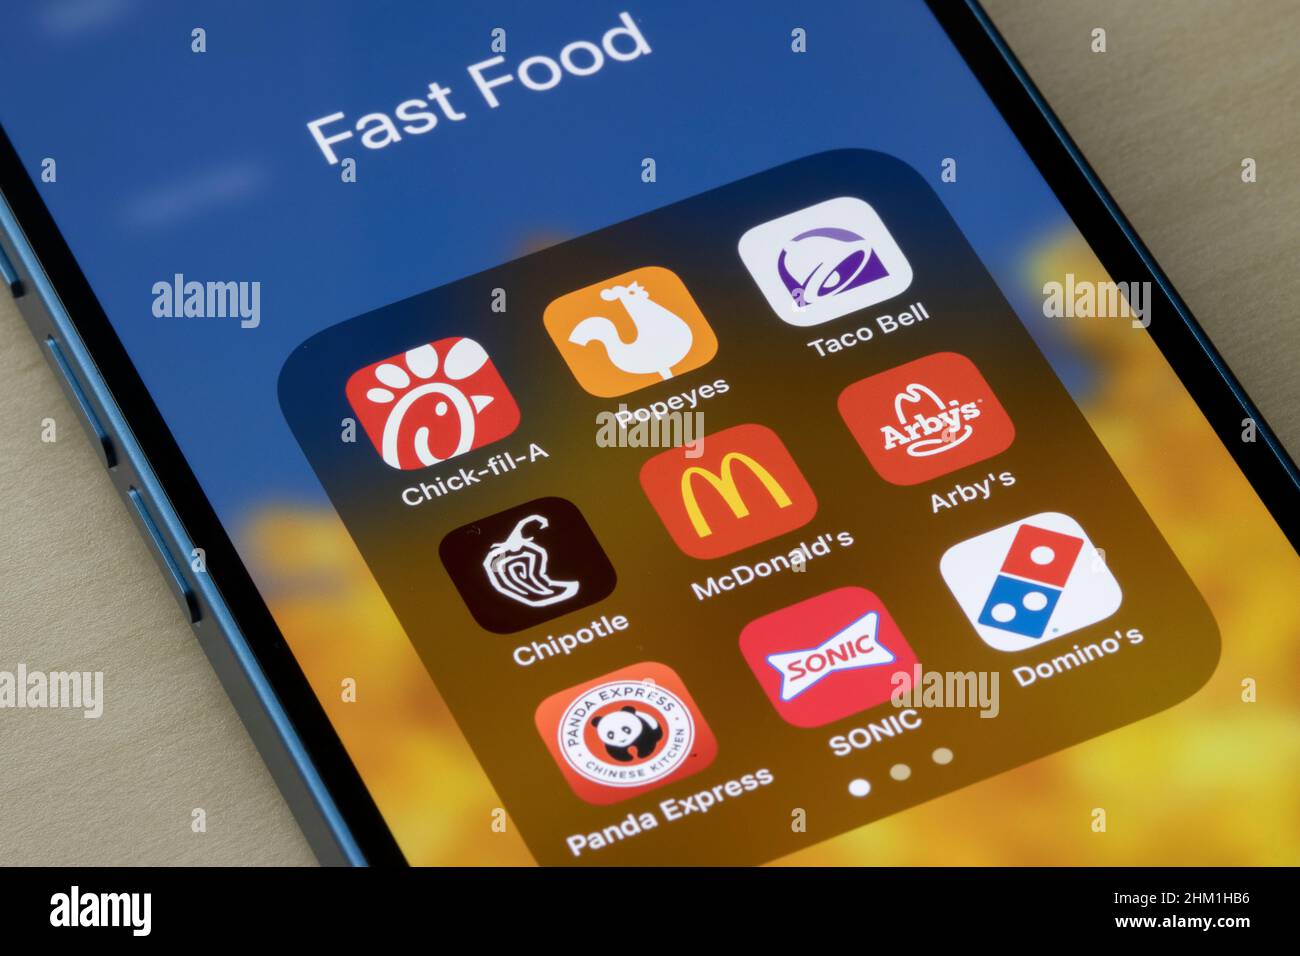 App della catena di fast food assortite sono disponibili su iPhone: Chick-fil-A, Popeyes, Taco Bell, Chipotle, McDonald's, Arby's, Panda Express, SONIC e Domino's Foto Stock